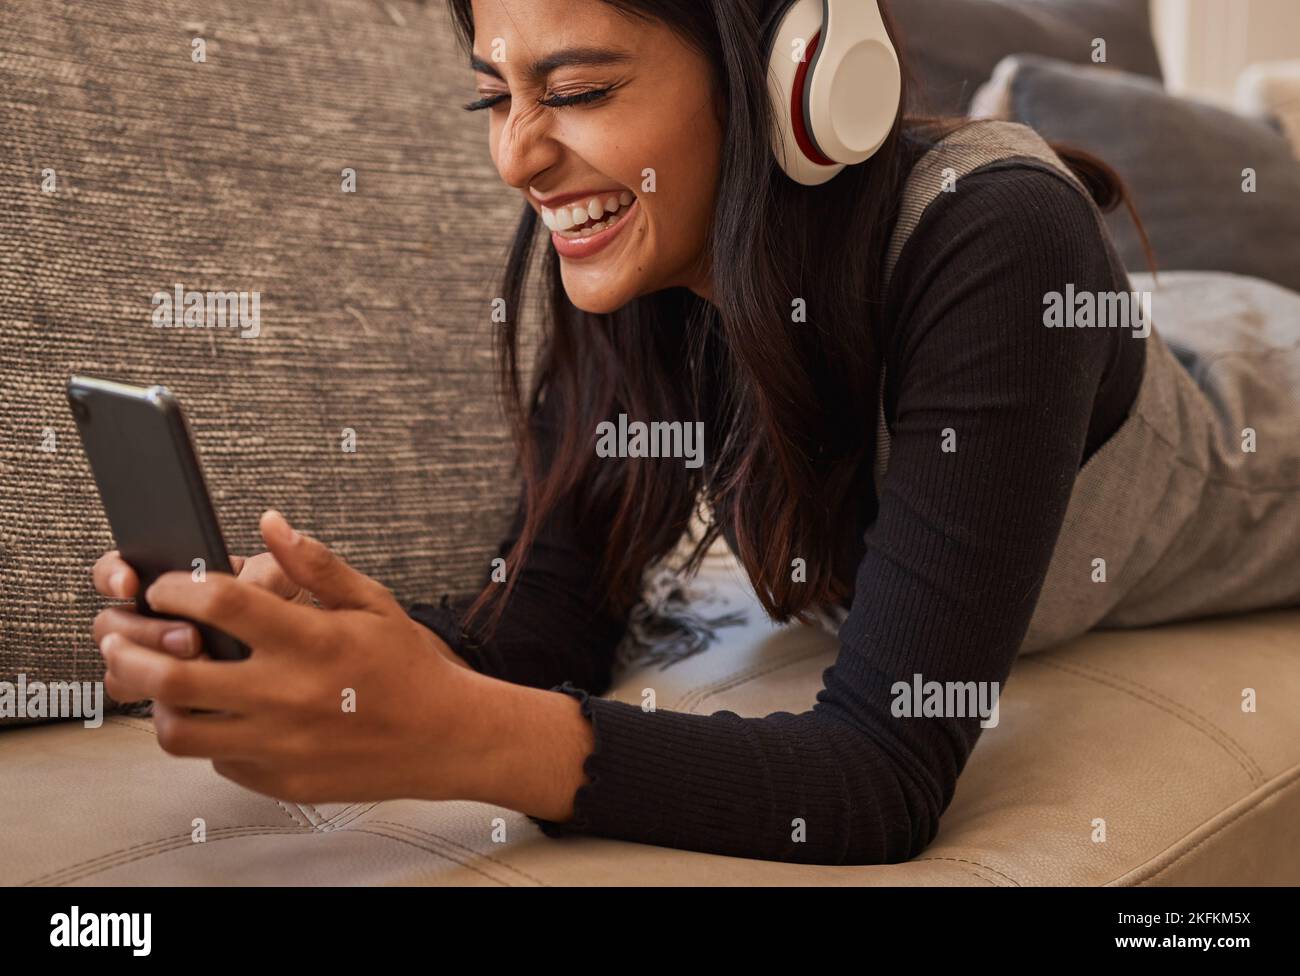 Smartphone, Kopfhörer und Frau auf dem Sofa hören Musik, sehen Online-Video-Chat oder Mobil-App-Zoom-Anruf. Aufgeregt, entspannen und Musik von einem jungen Mädchen Stockfoto